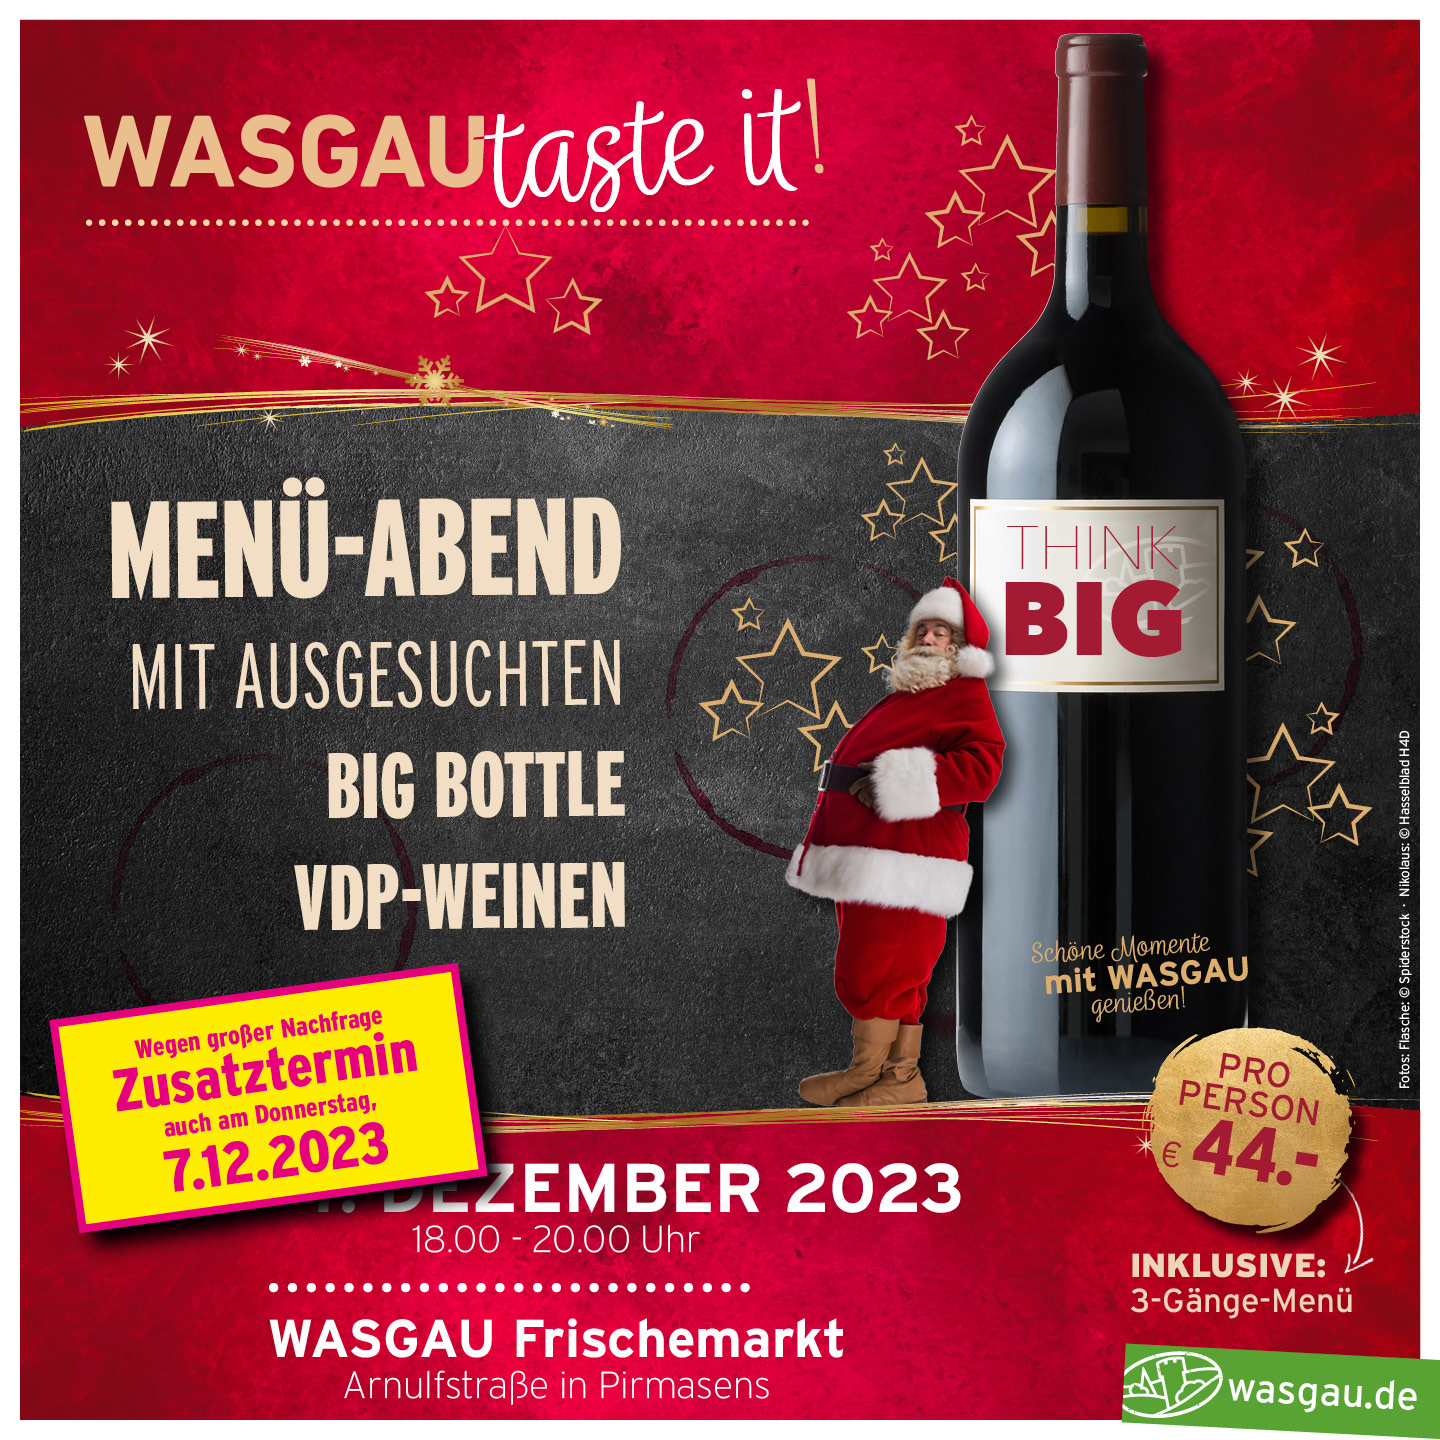 Das finale Taste It Event bei WASGAU für 2023 wird ein Knaller! Big Bottle, VDP Weinen